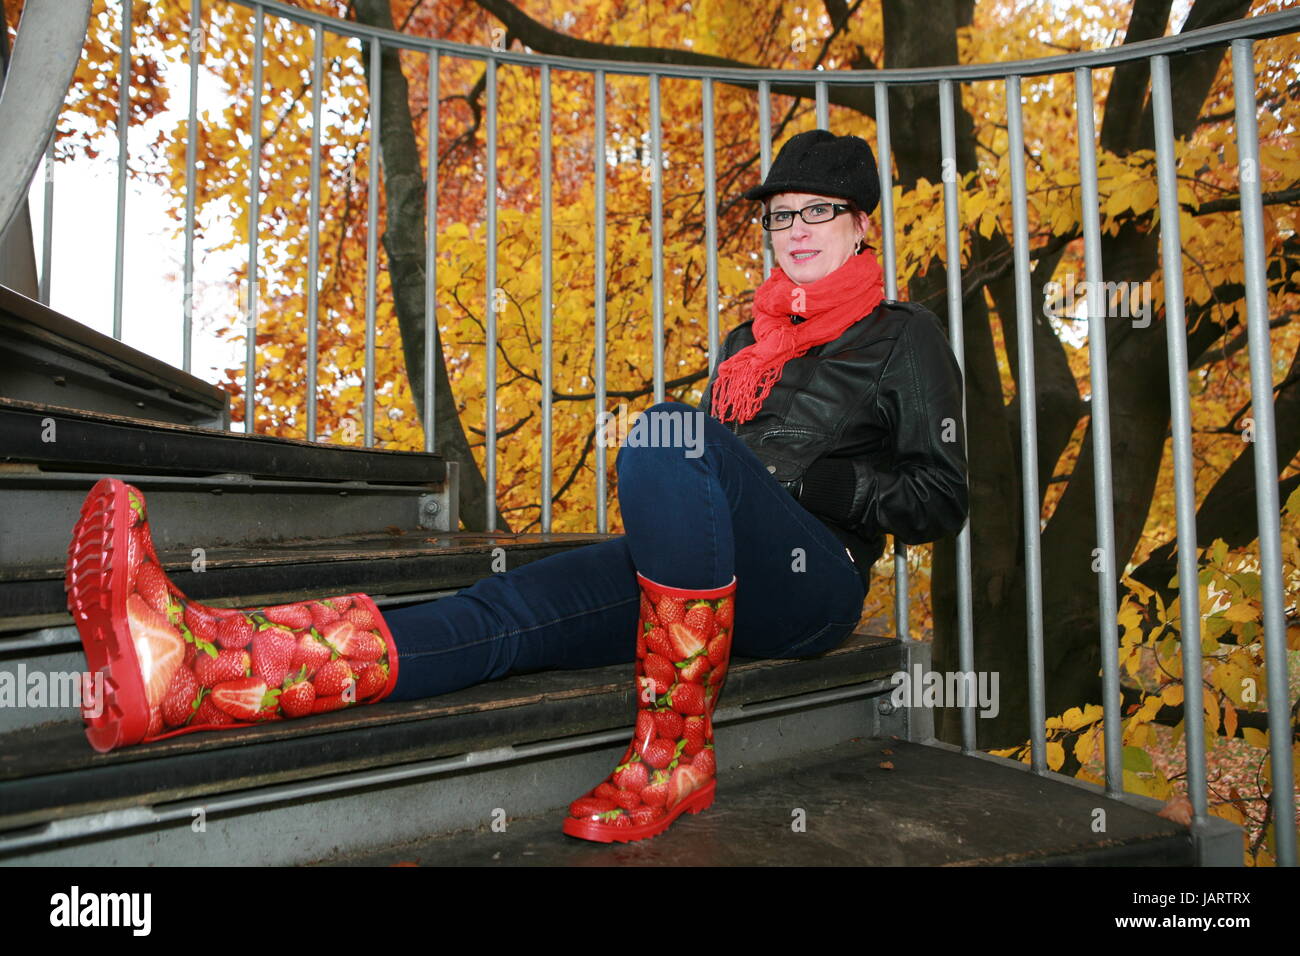 Frau um die 50 mit Gummistiefeln, auf einer Treppe sitzend, mit roten  Gummistiefeln Stock Photo - Alamy